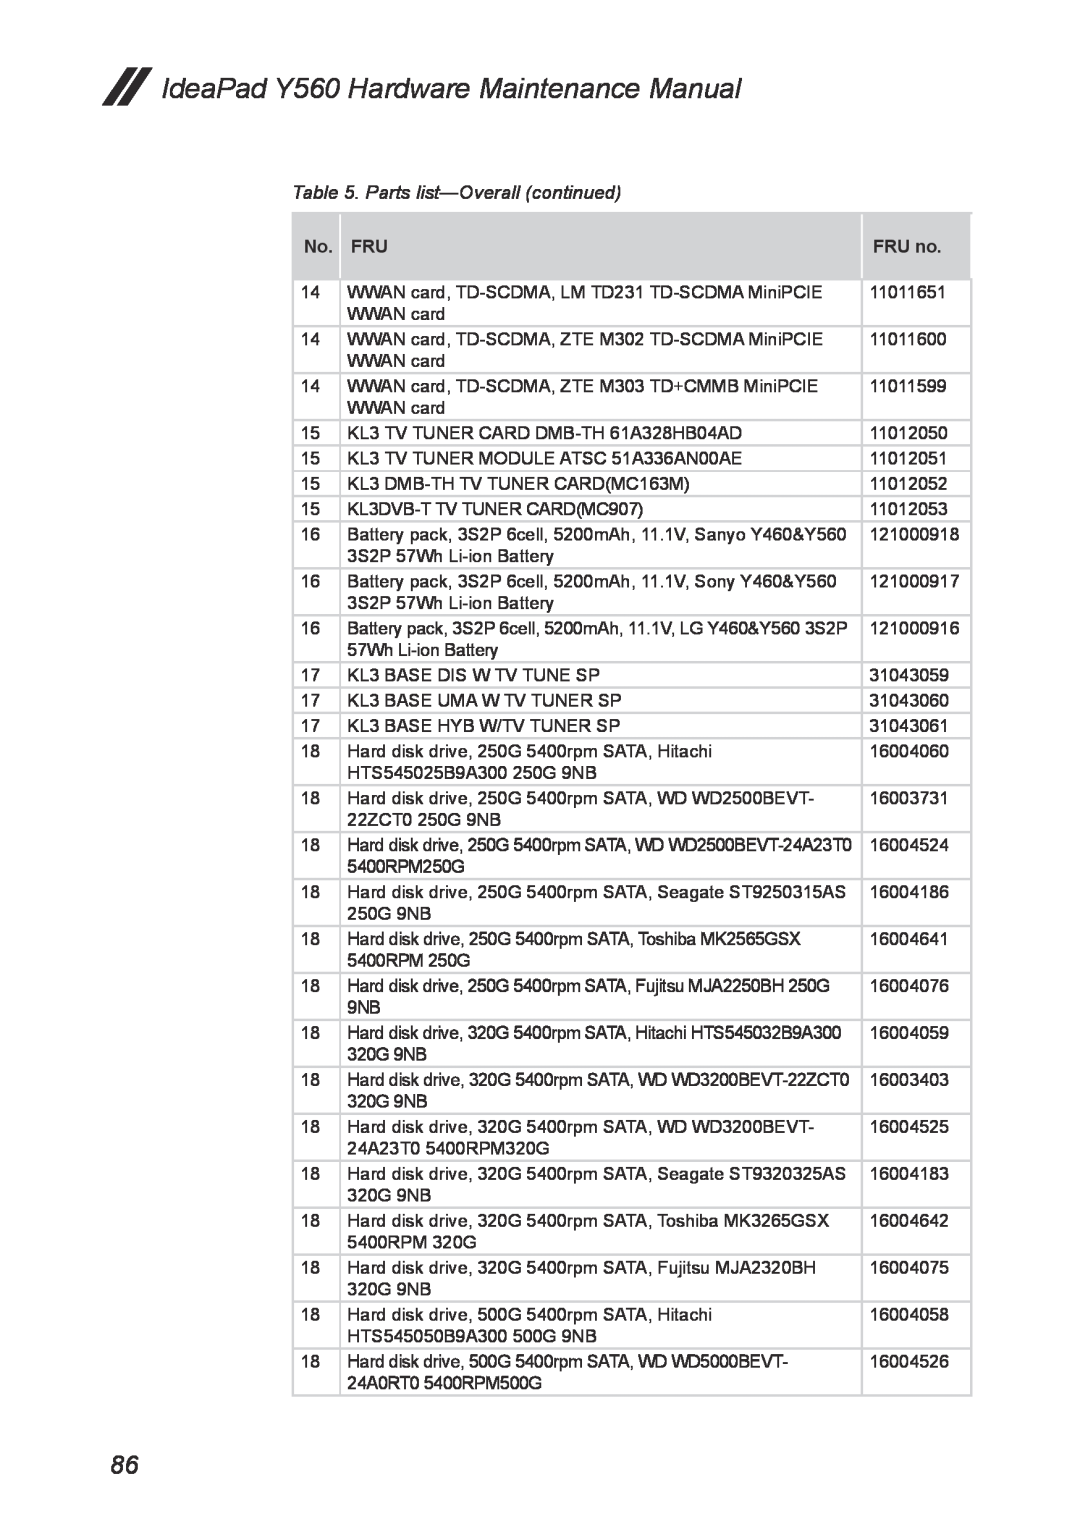 Lenovo manual IdeaPad Y560 Hardware Maintenance Manual, Parts list-Overall continued, No. FRU, FRU no 